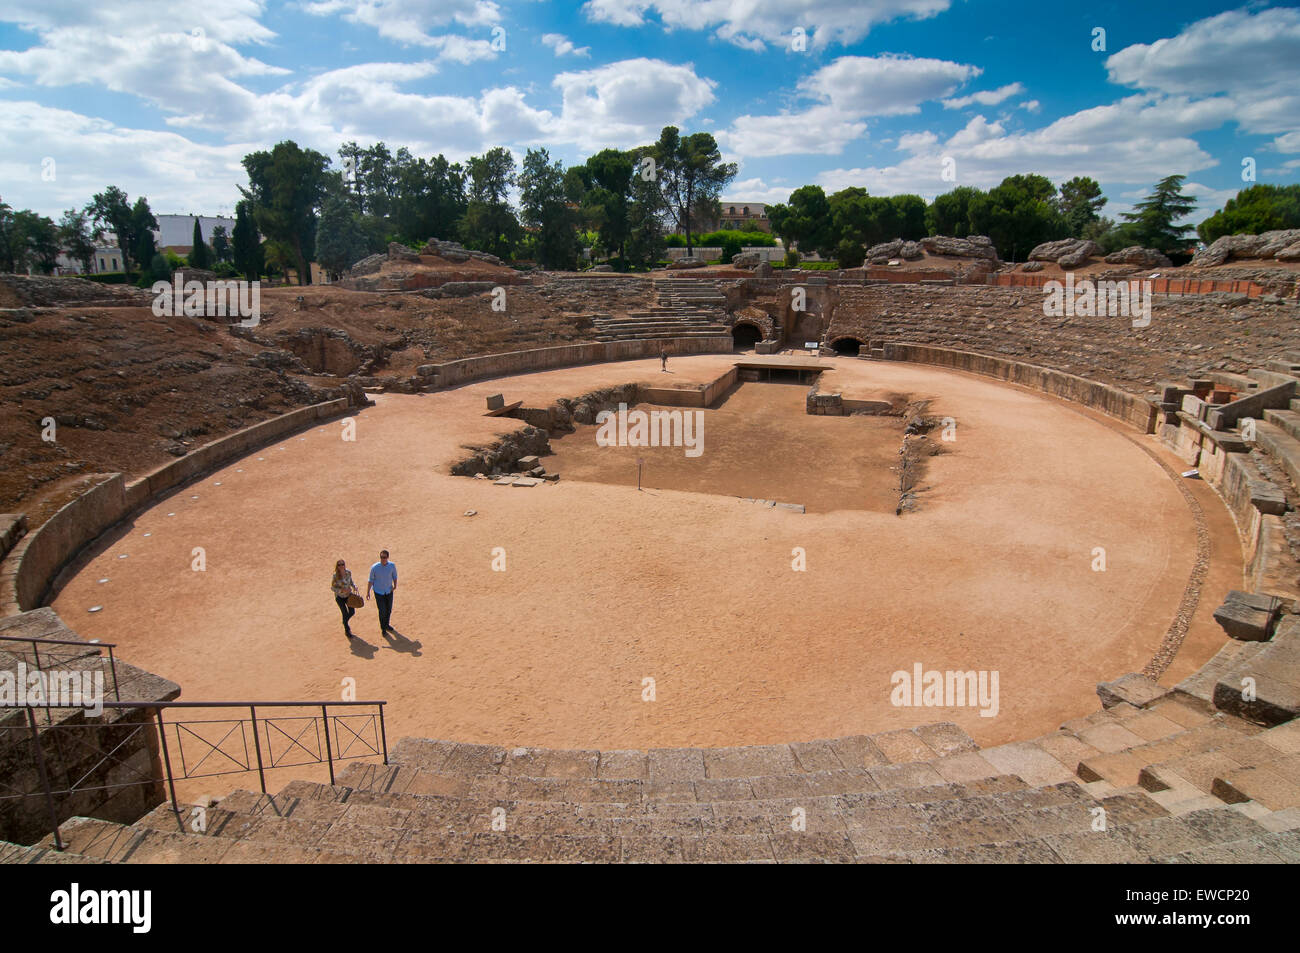 Anfiteatro romano, Merida, provincia di Badajoz, regione Estremadura, Spagna, Europa Foto Stock